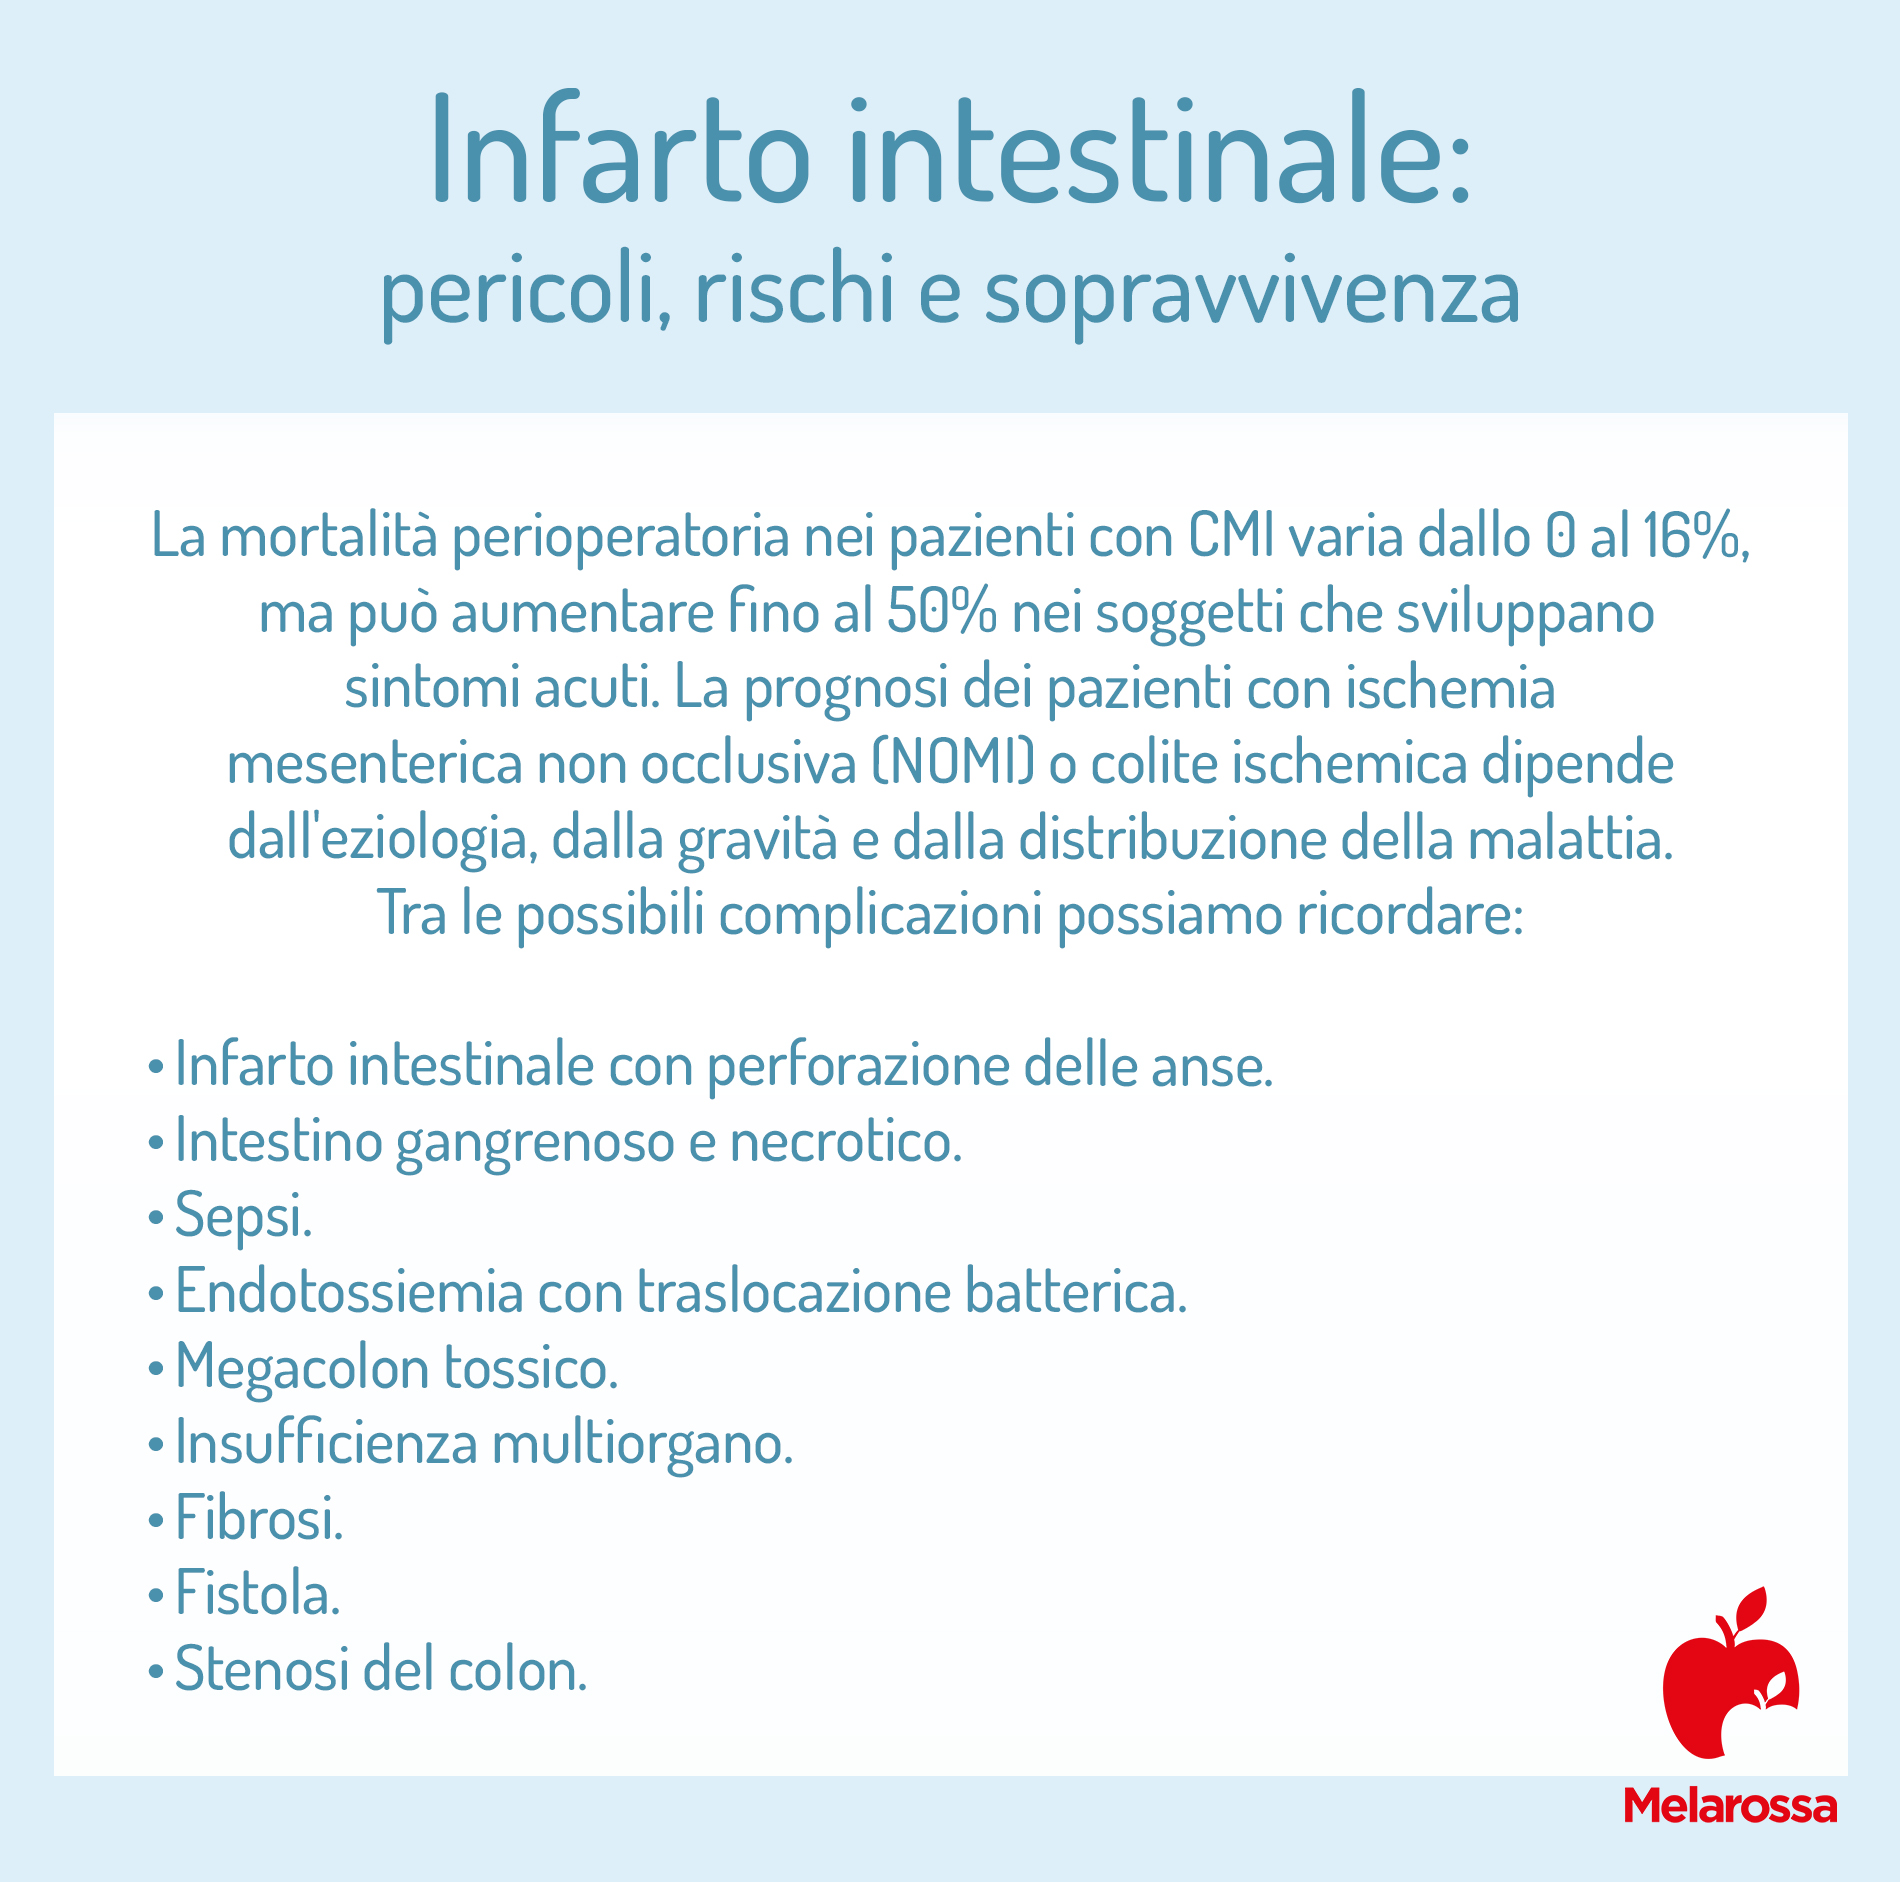 Infarto intestinale: rischi e pericoli